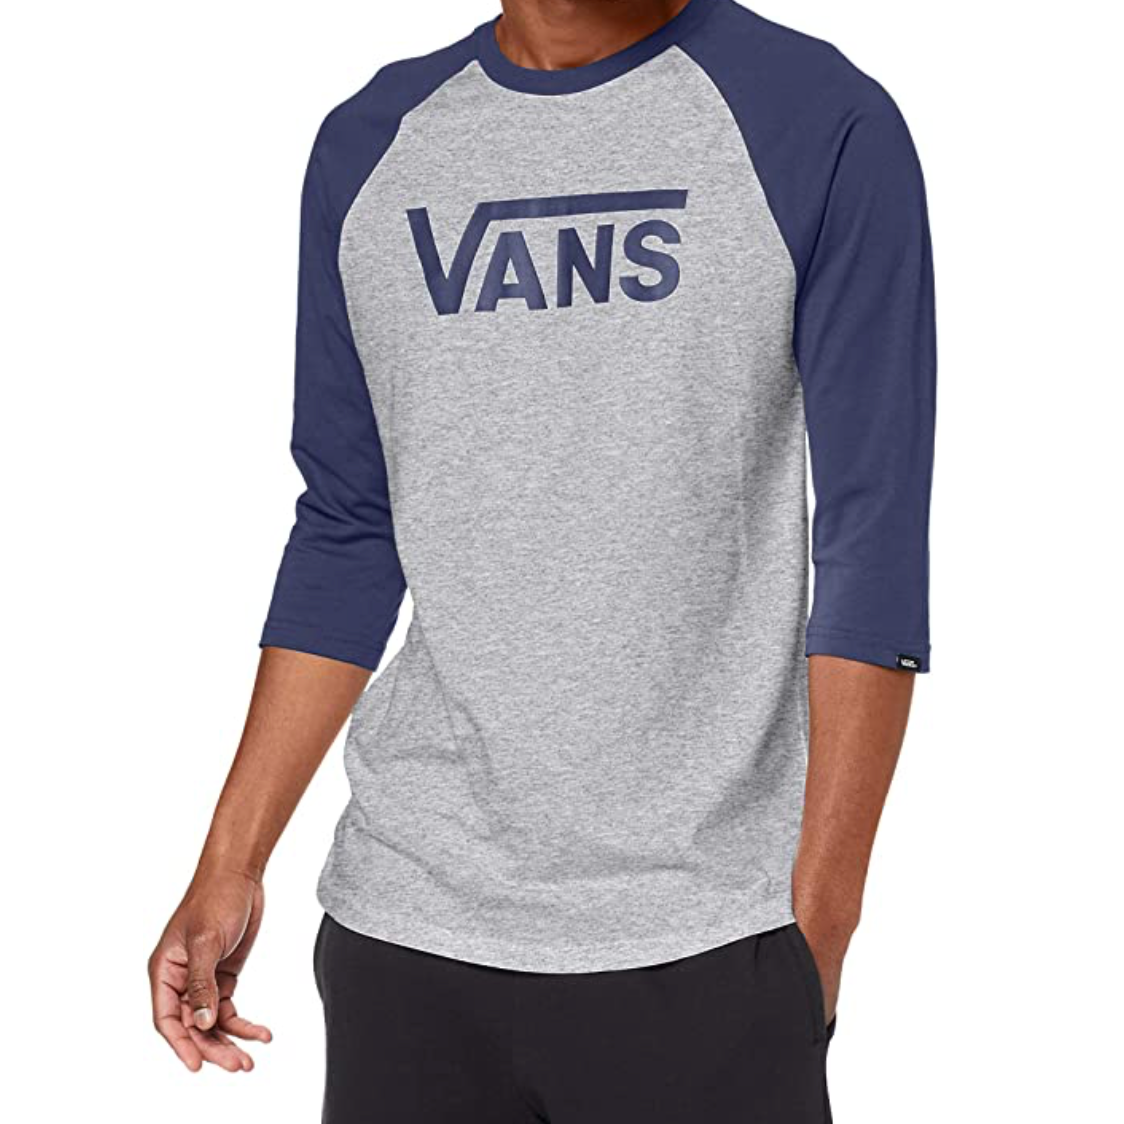 Vans Mens - Classic Raglan T-Shirt - Blue / Grey